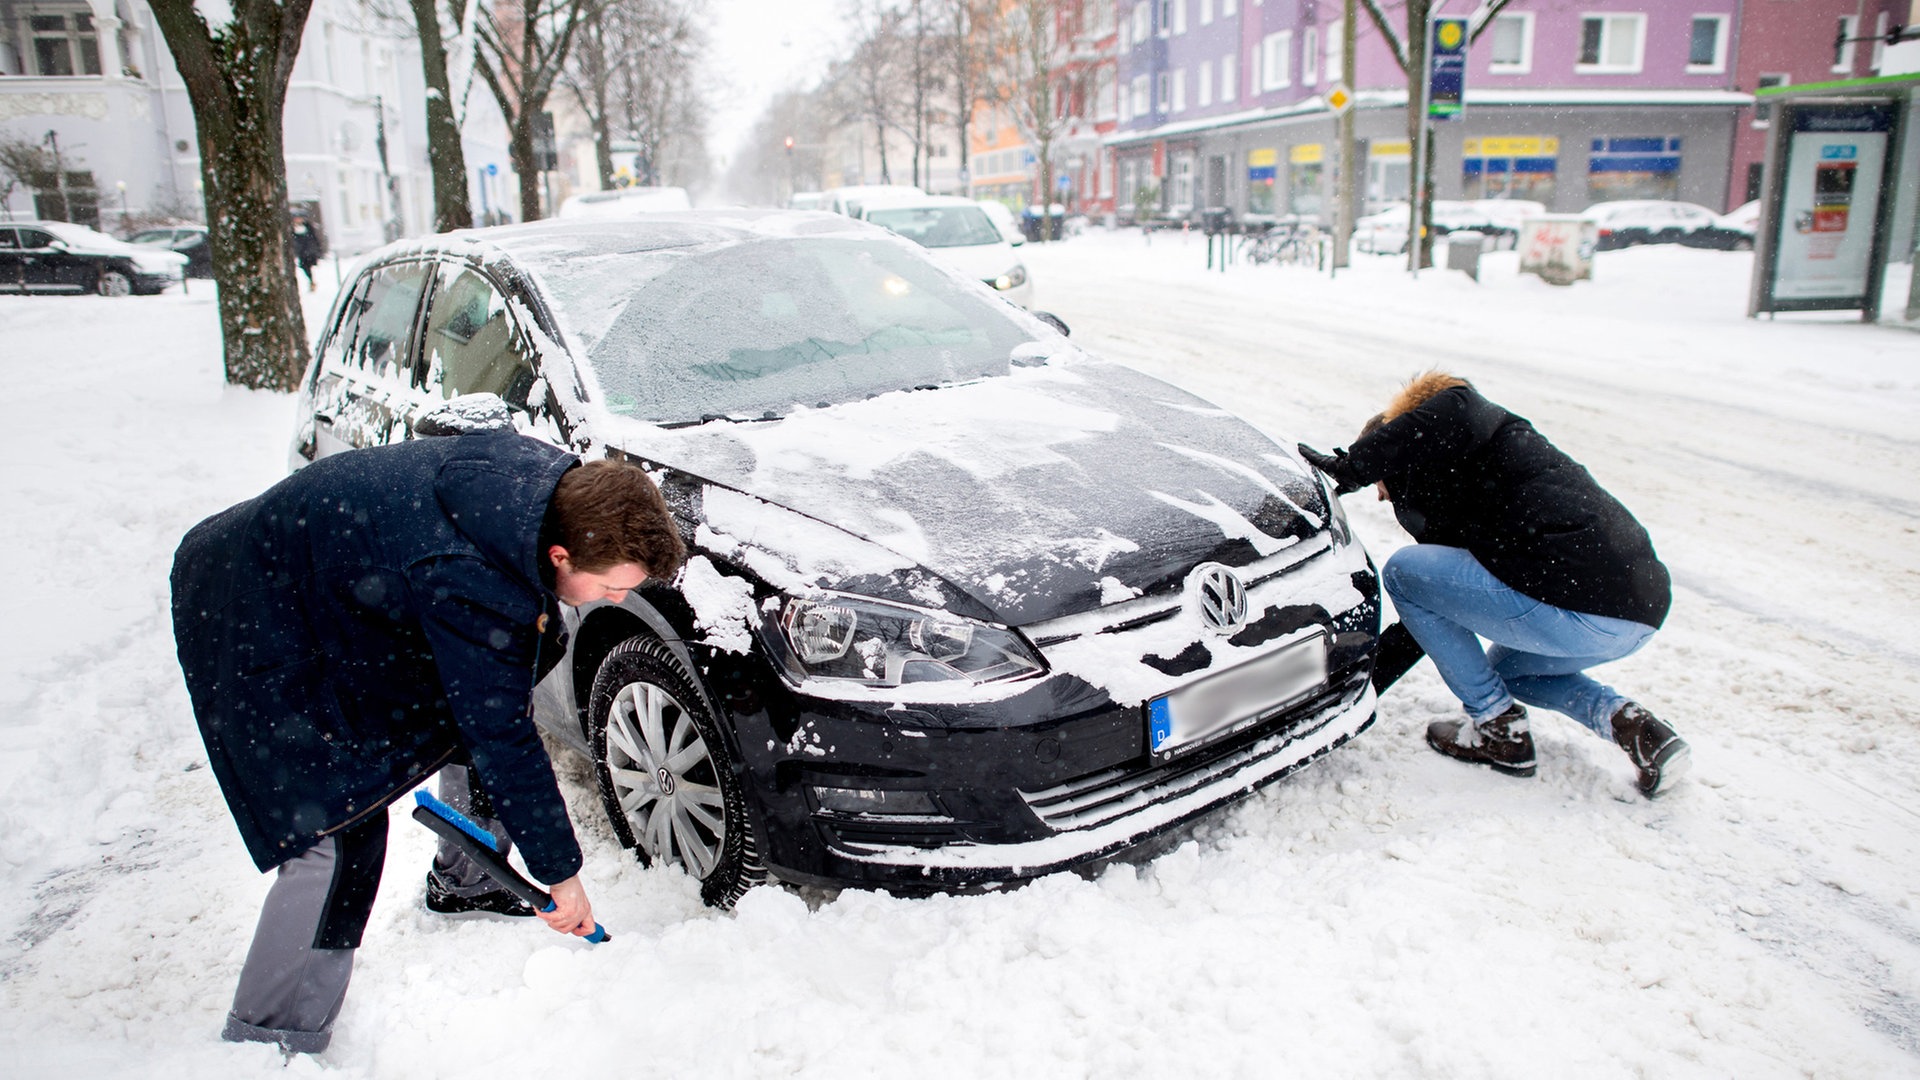 Auto im Schnee festgefahren - was hilft?